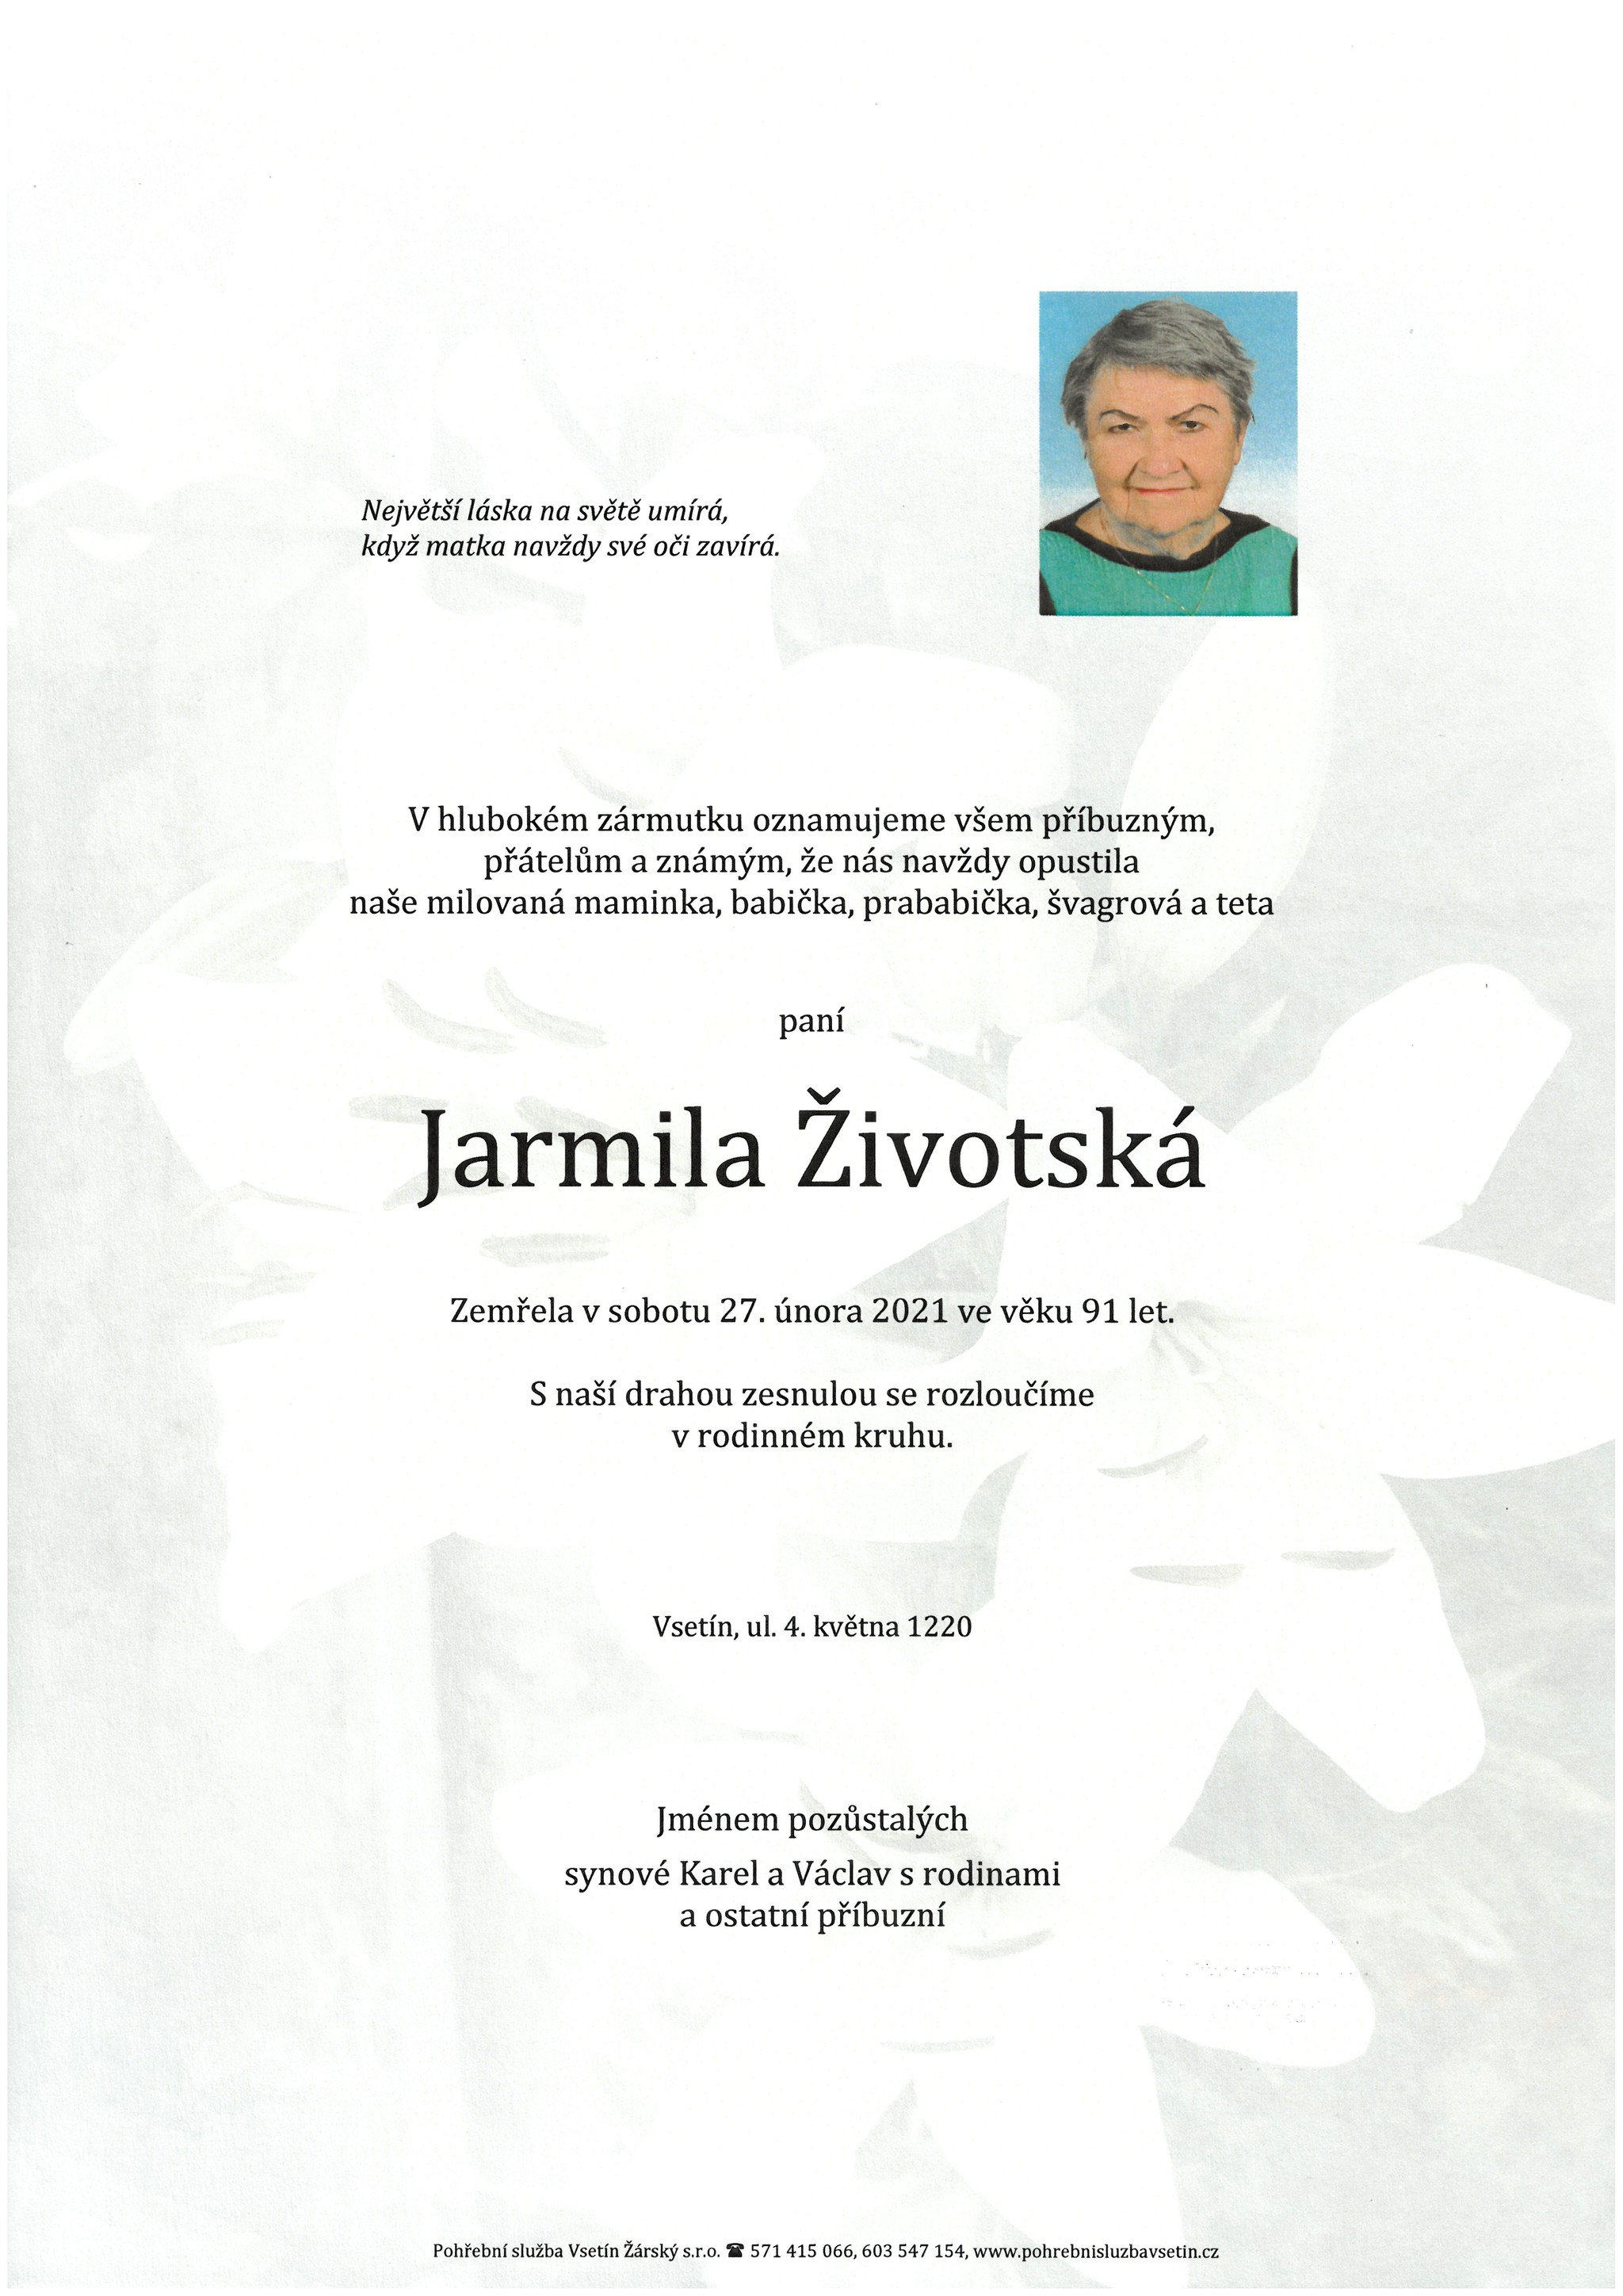 Jarmila Životská